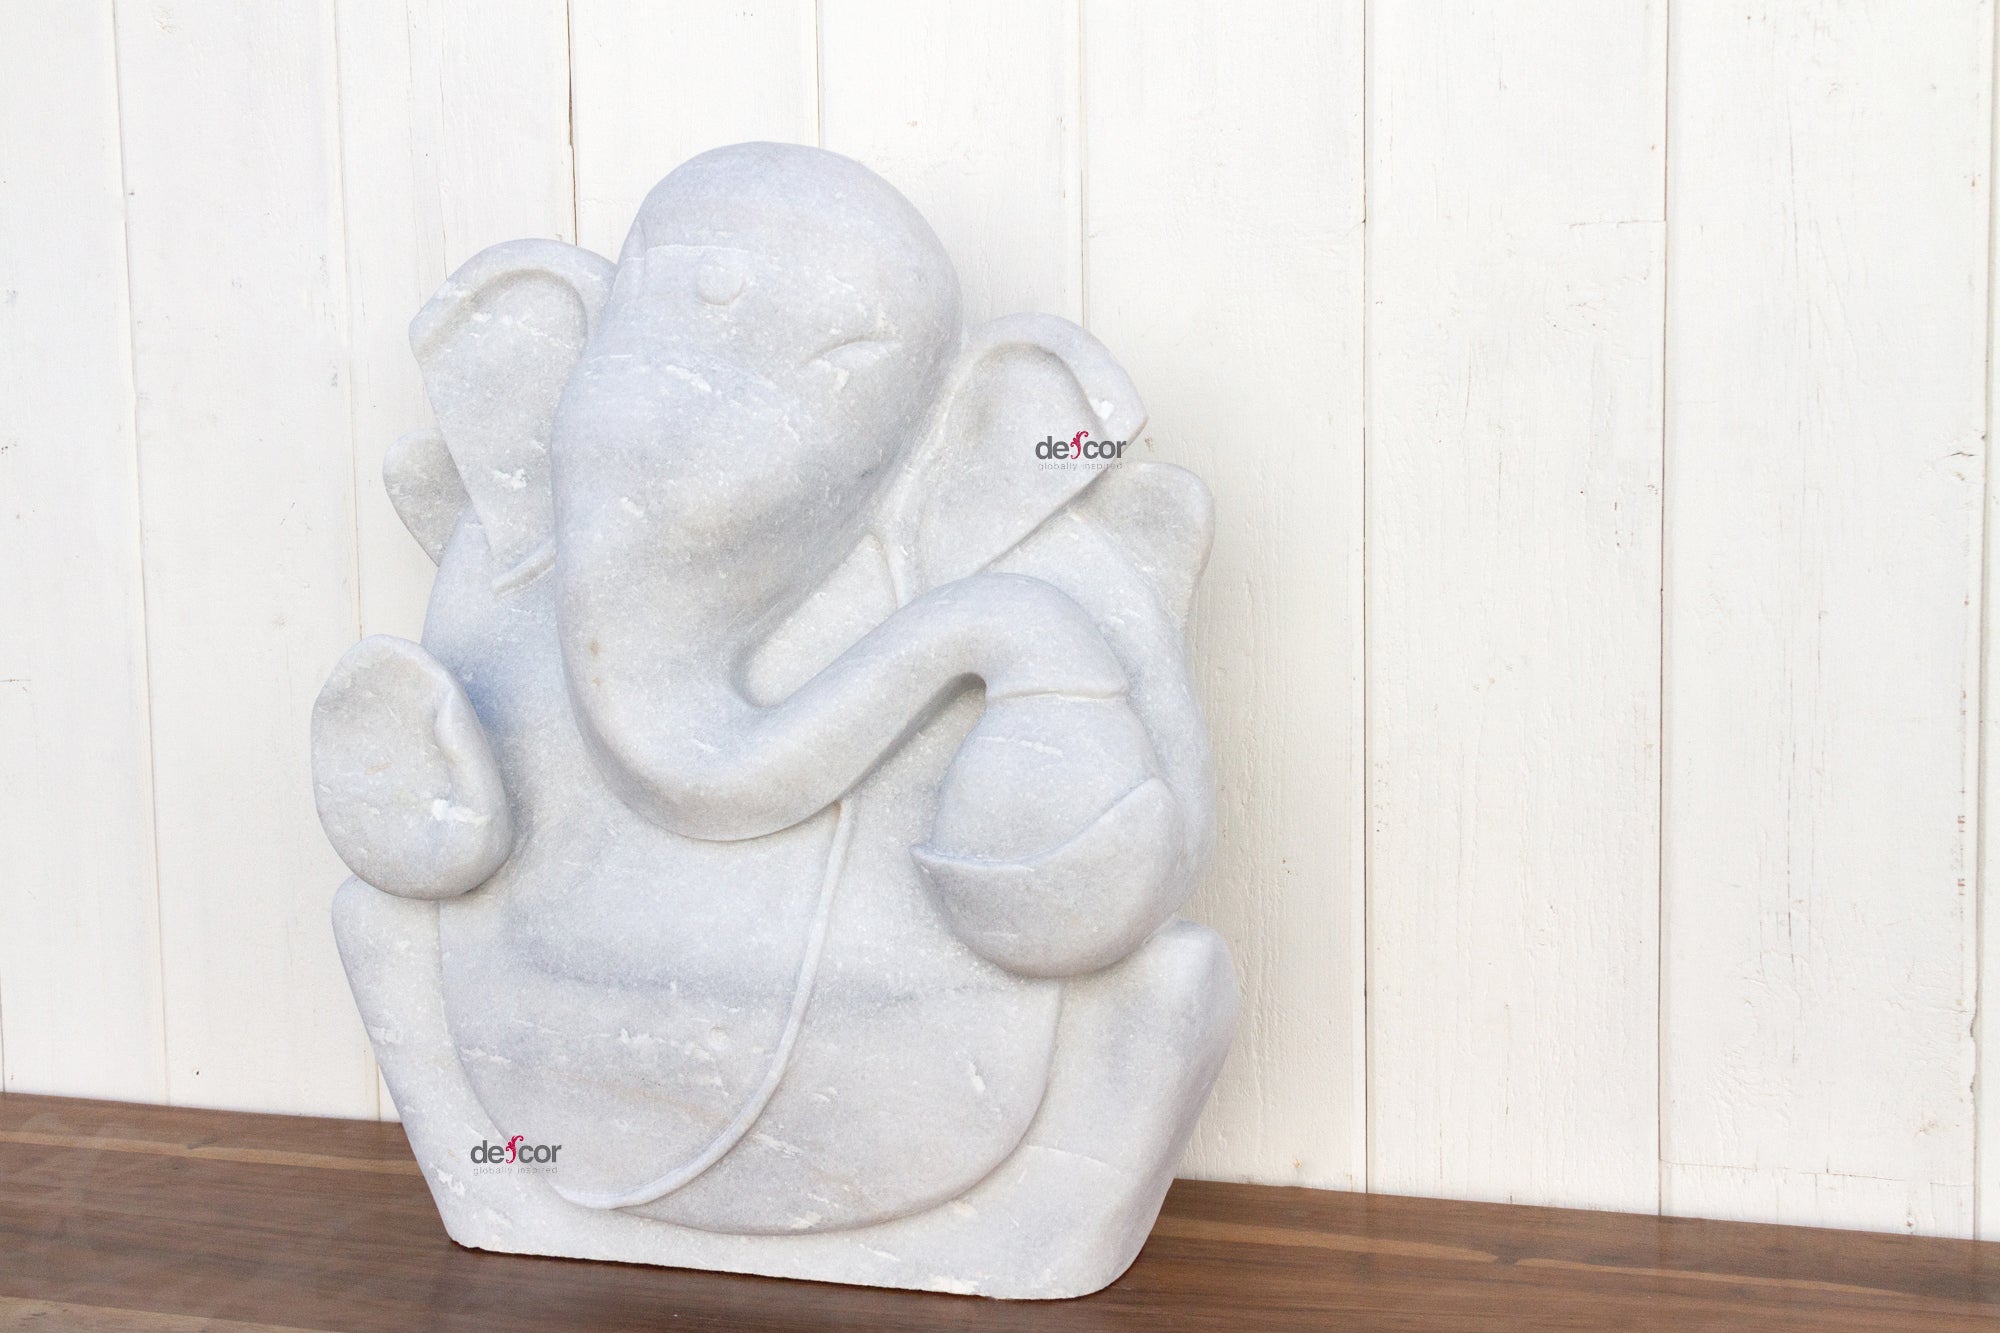 DE-COR | Ispirazione globale, Ganesh da giardino in marmo splendidamente scolpito (commercio)